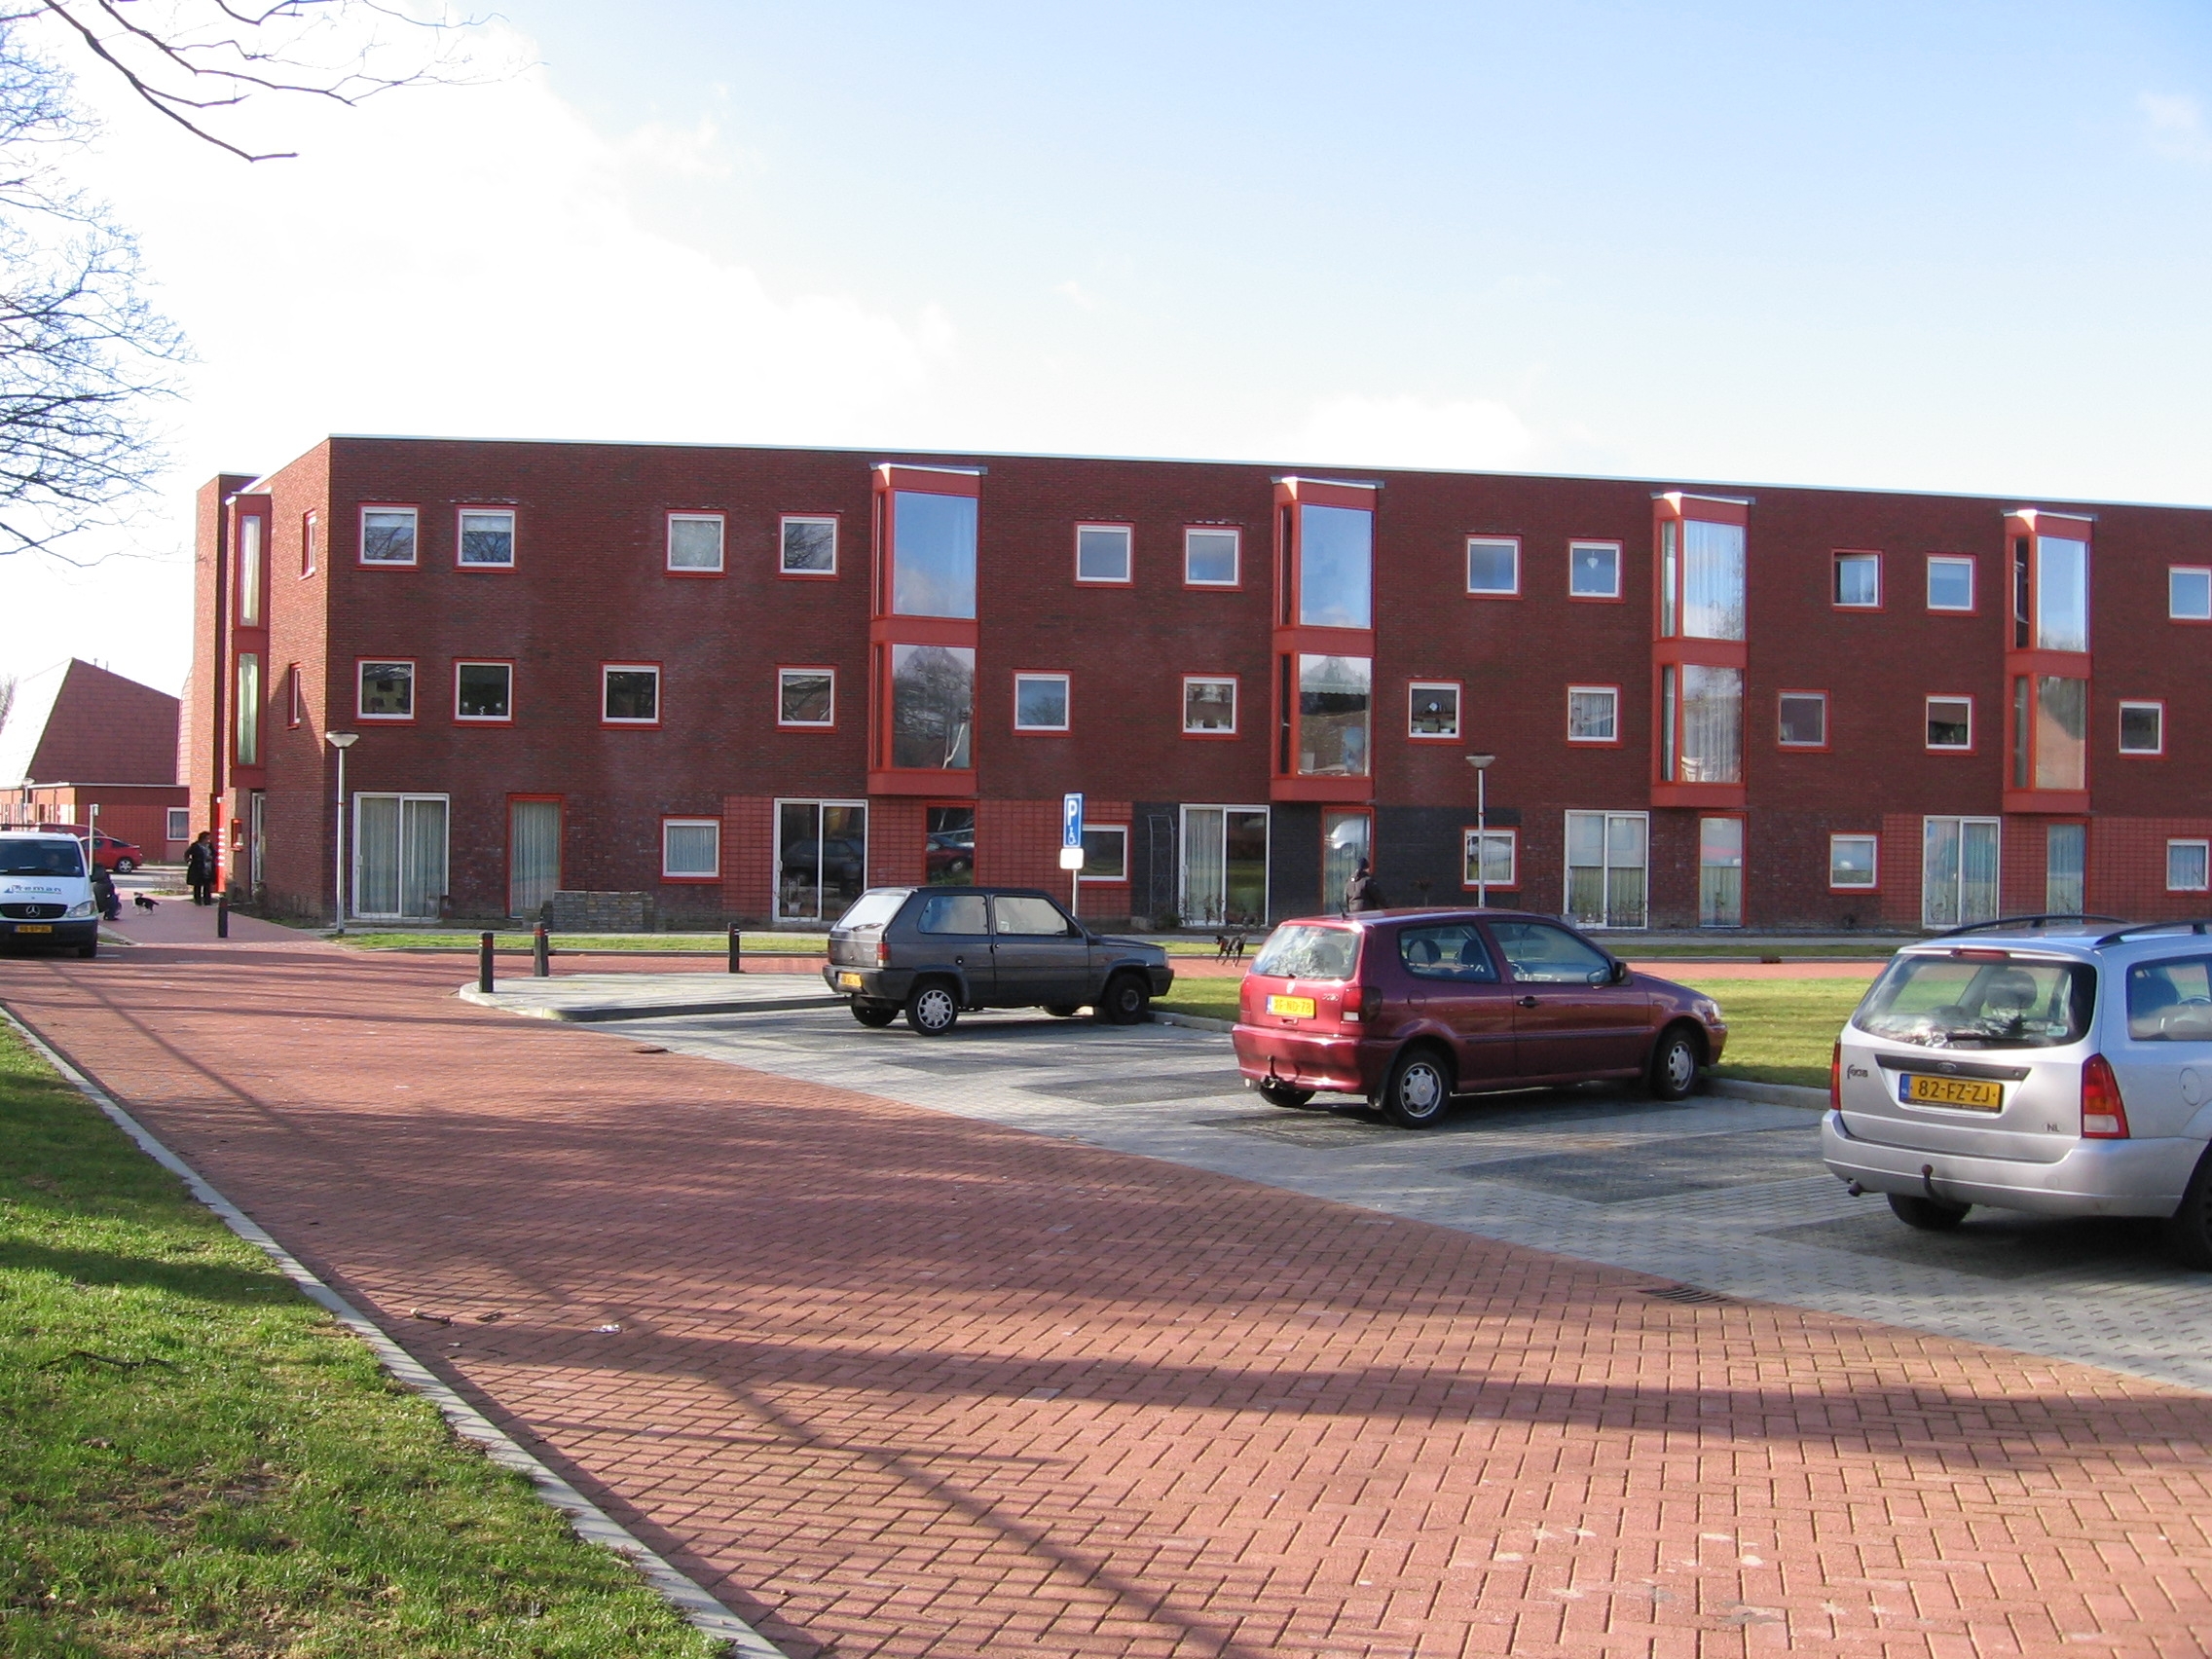 Brederostraat 36, 8331 PJ Steenwijk, Nederland